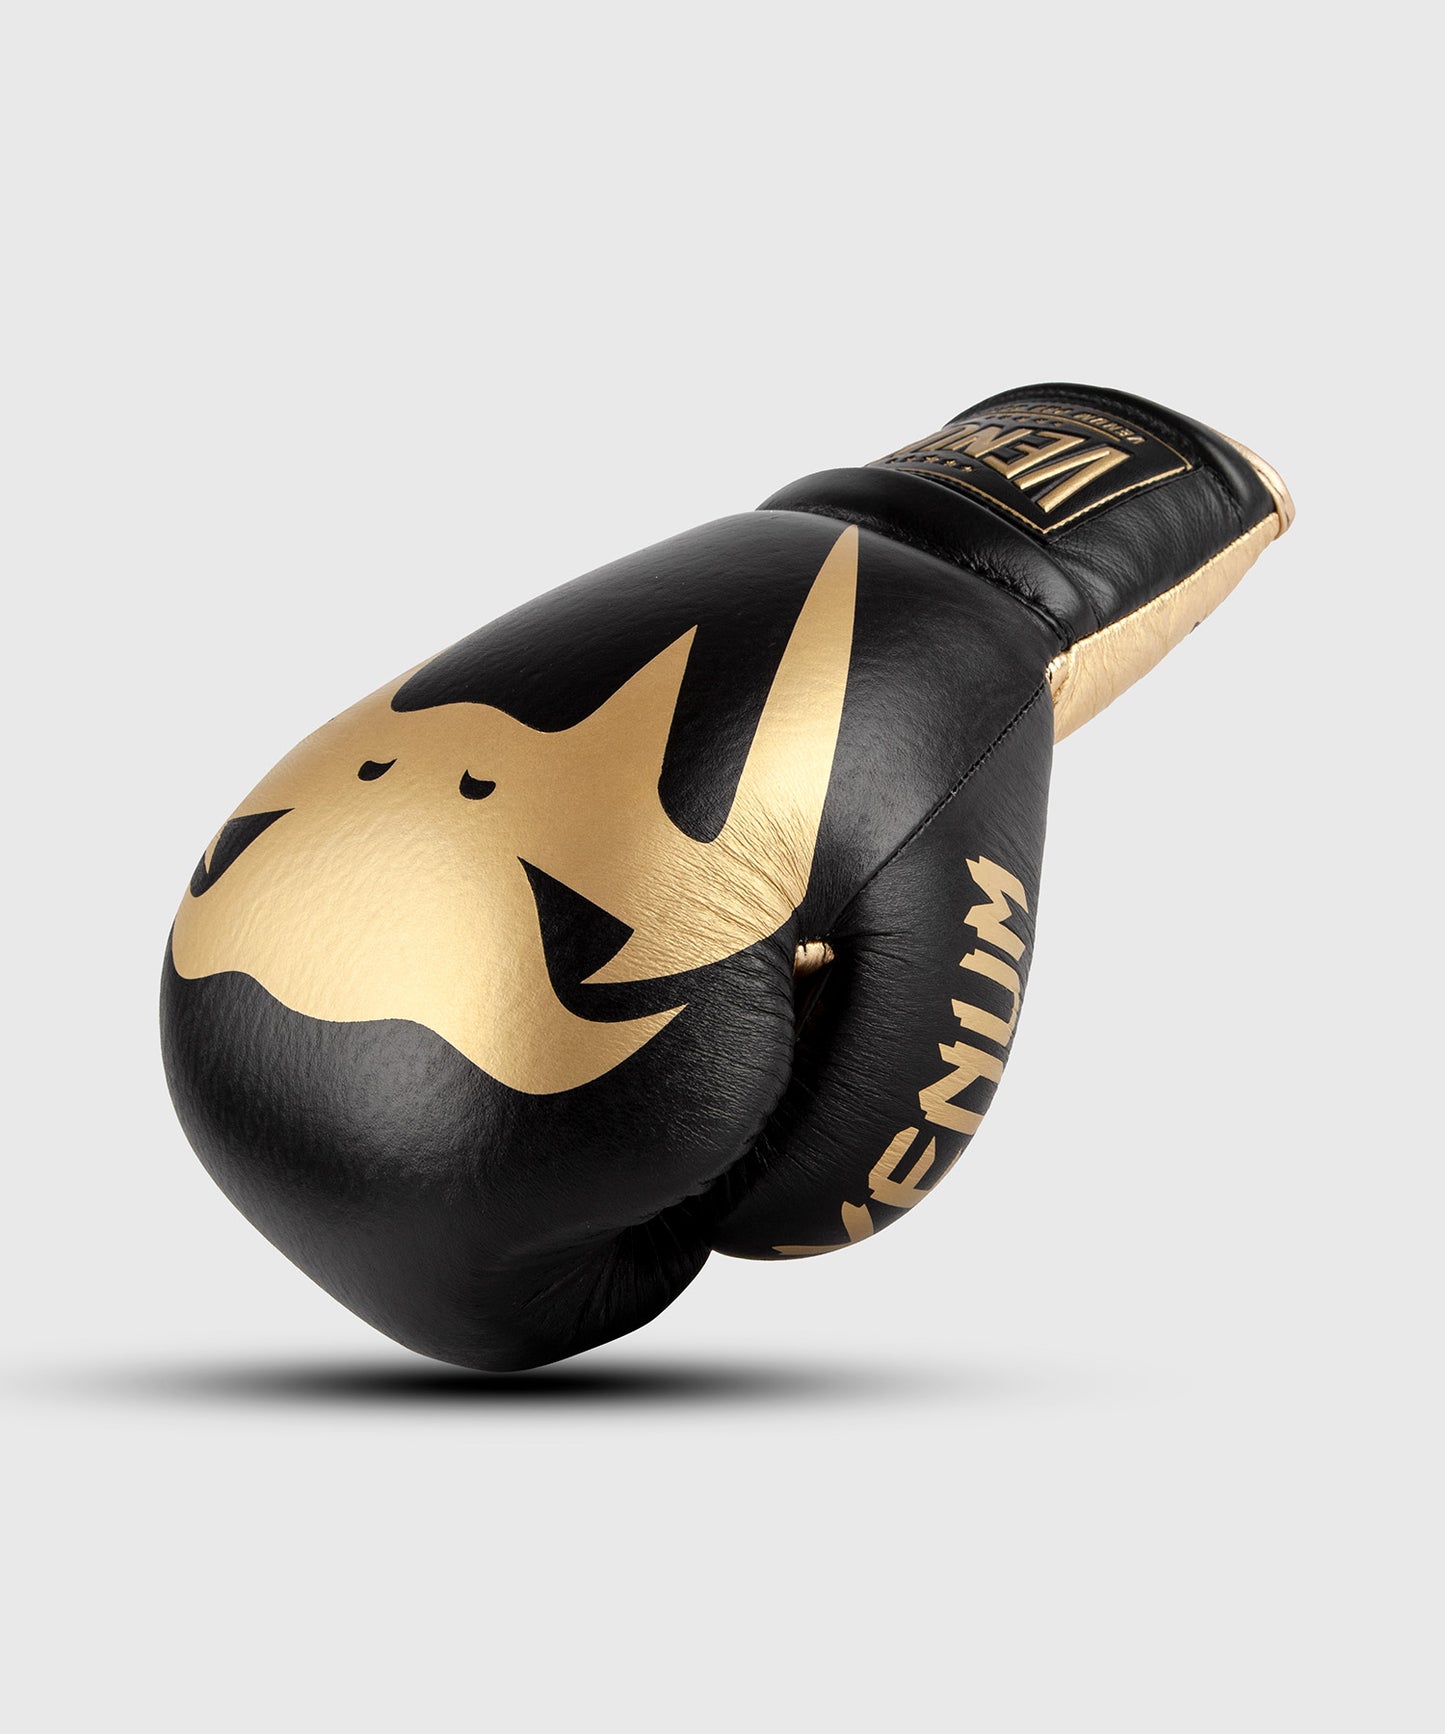 Боксерские перчатки Venum Giant lace-up pro - черный/золотой